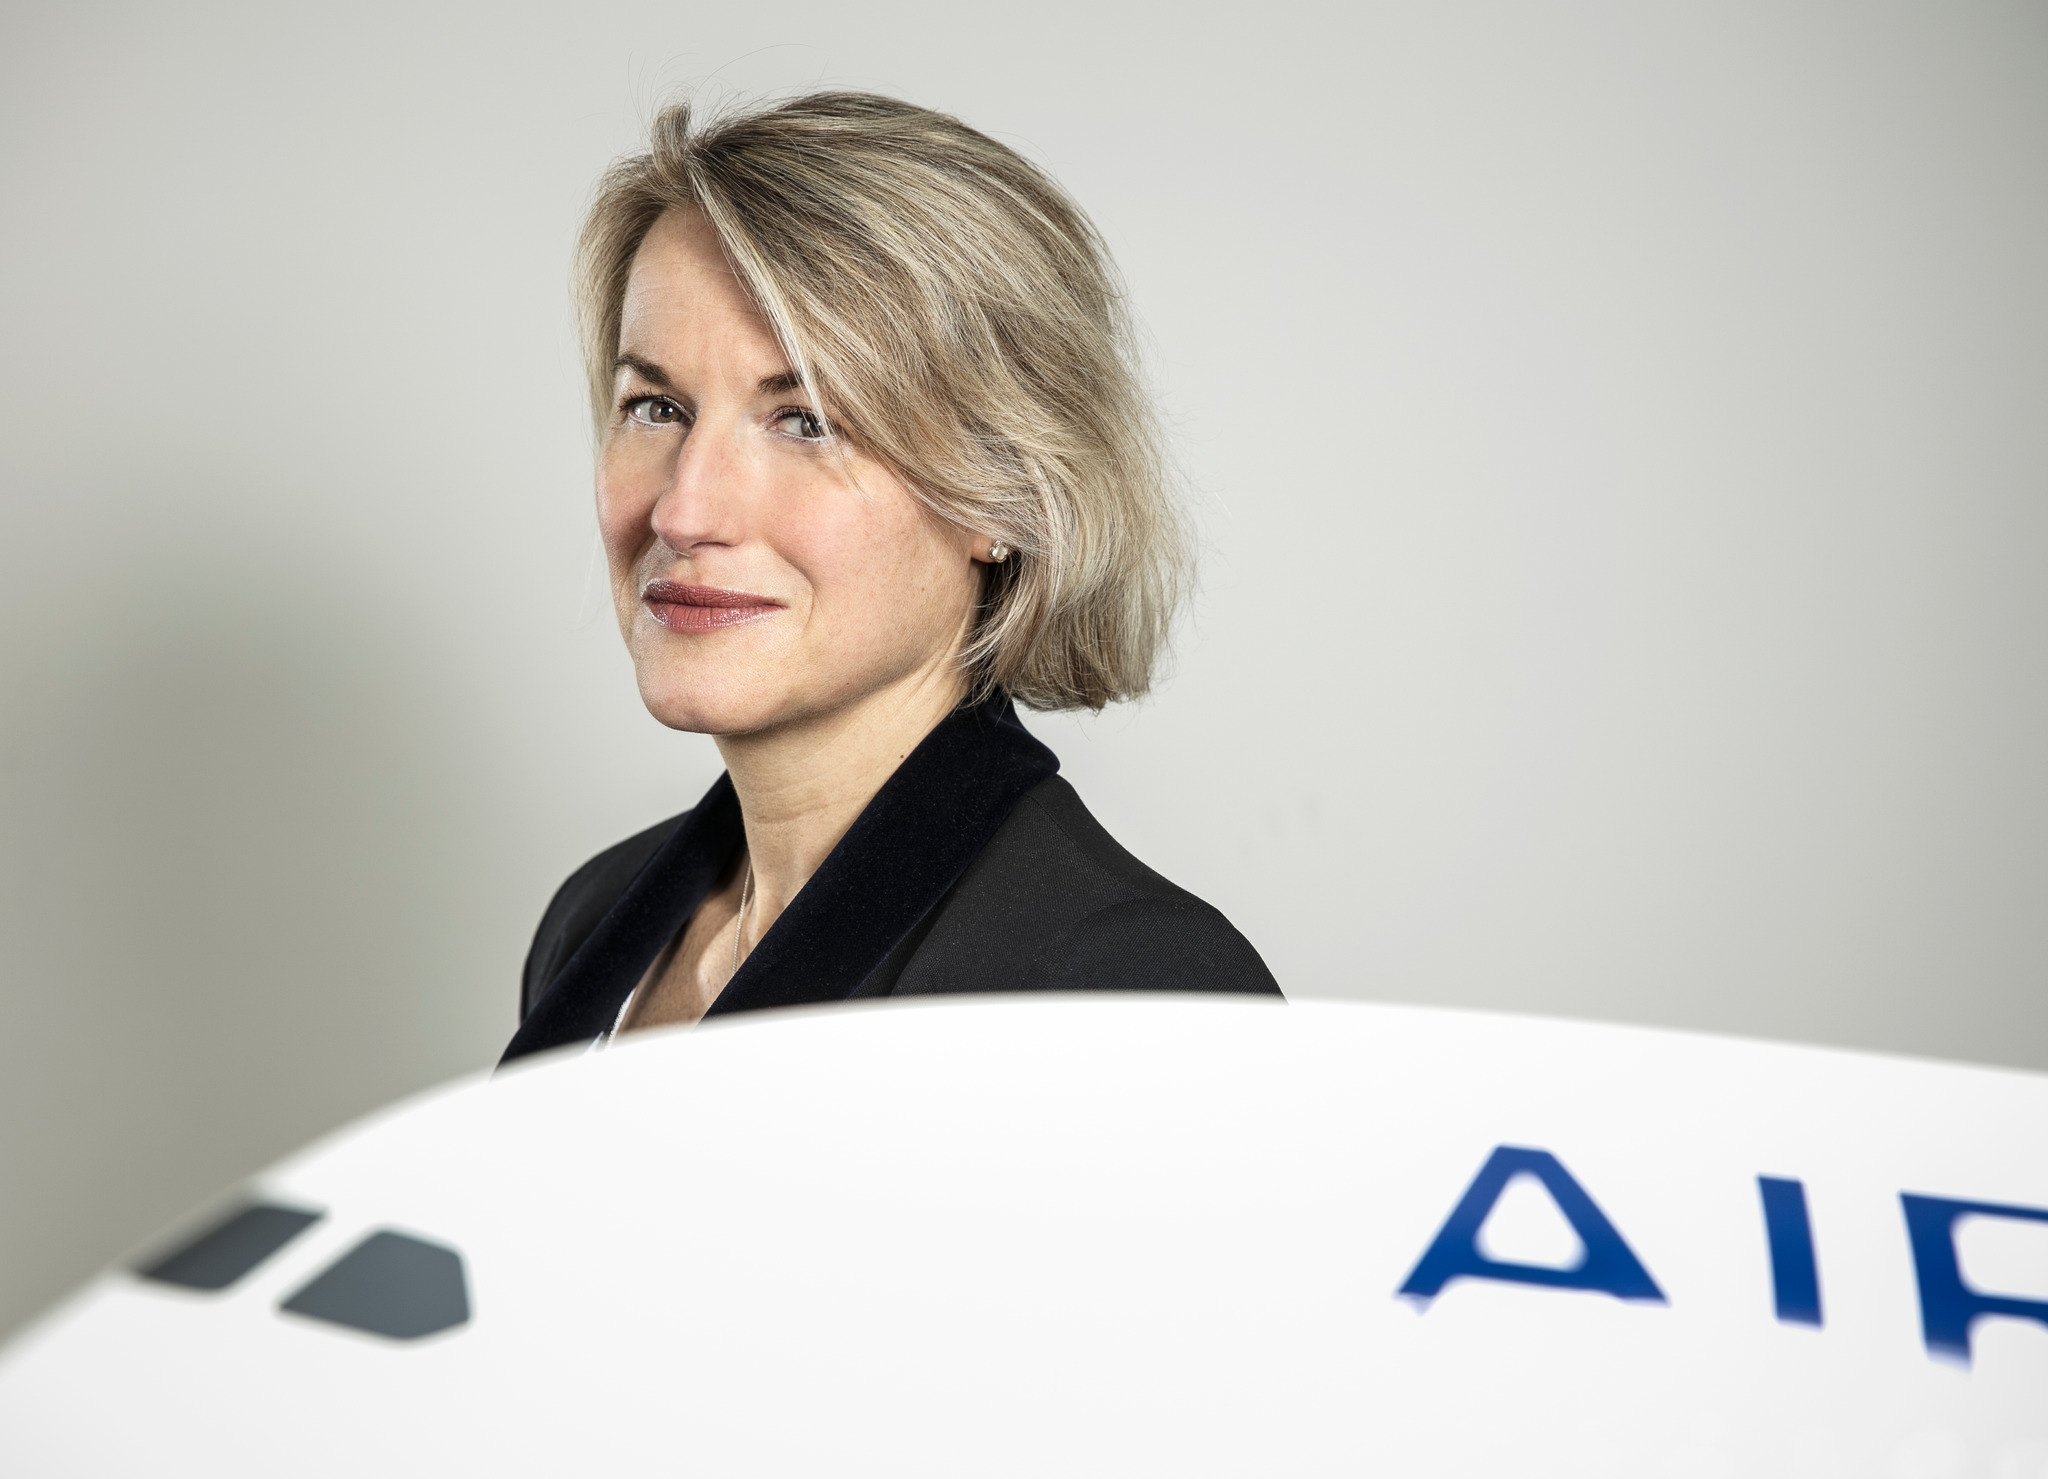 La patronne d'Air France présente de « profondes et sincères excuses » pour les retards et annulations